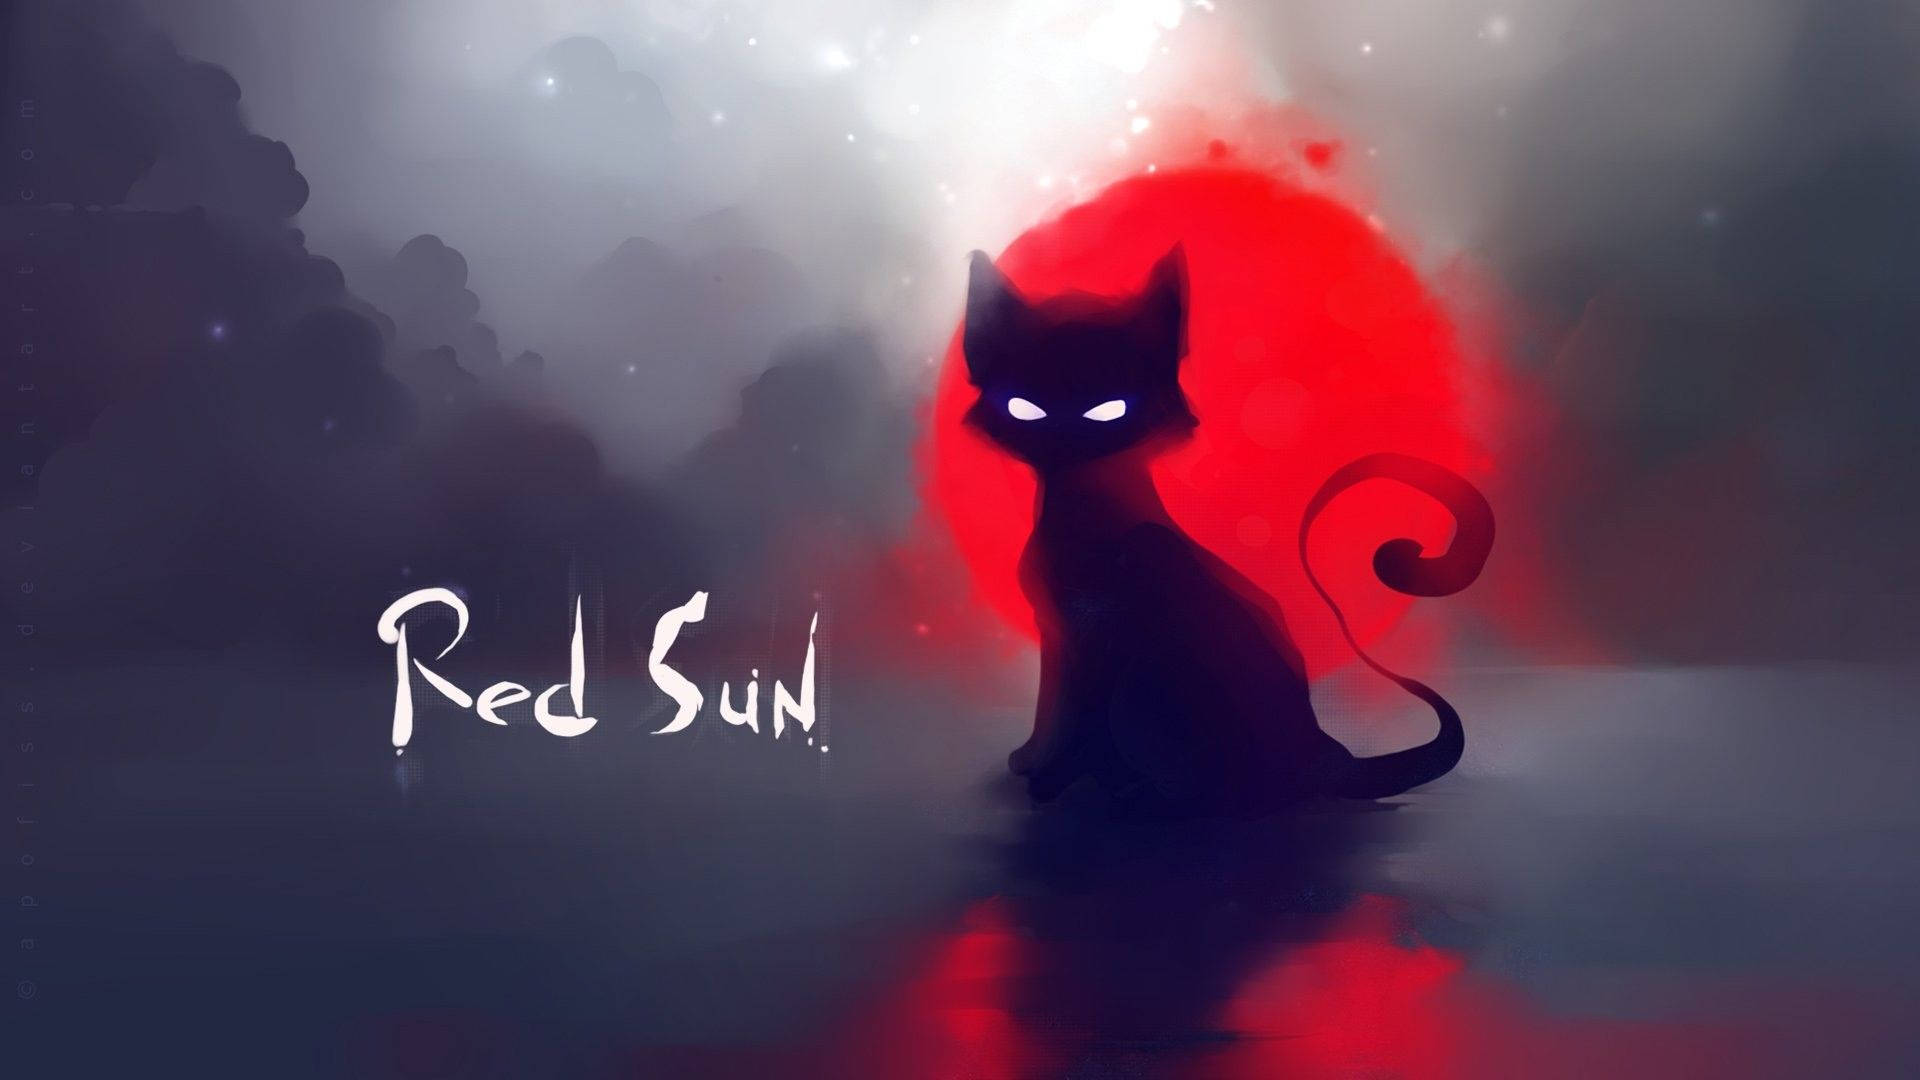 Katzenkunstschwarze Katze Rote Sonne Wallpaper